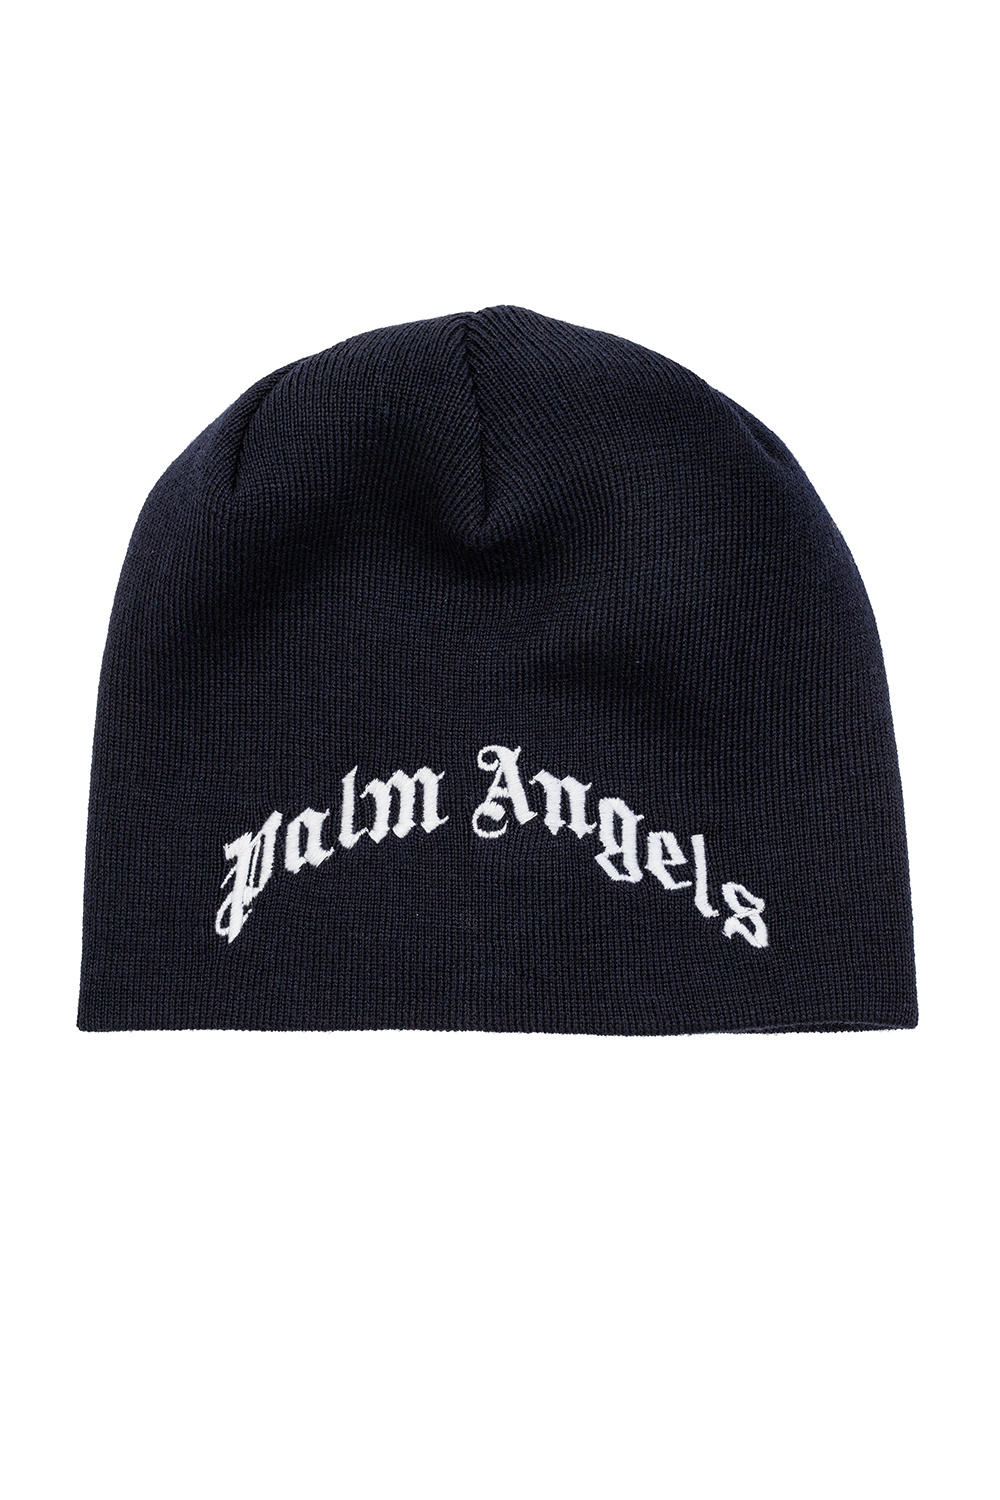 Palm Angels Kids Appliquéd hat